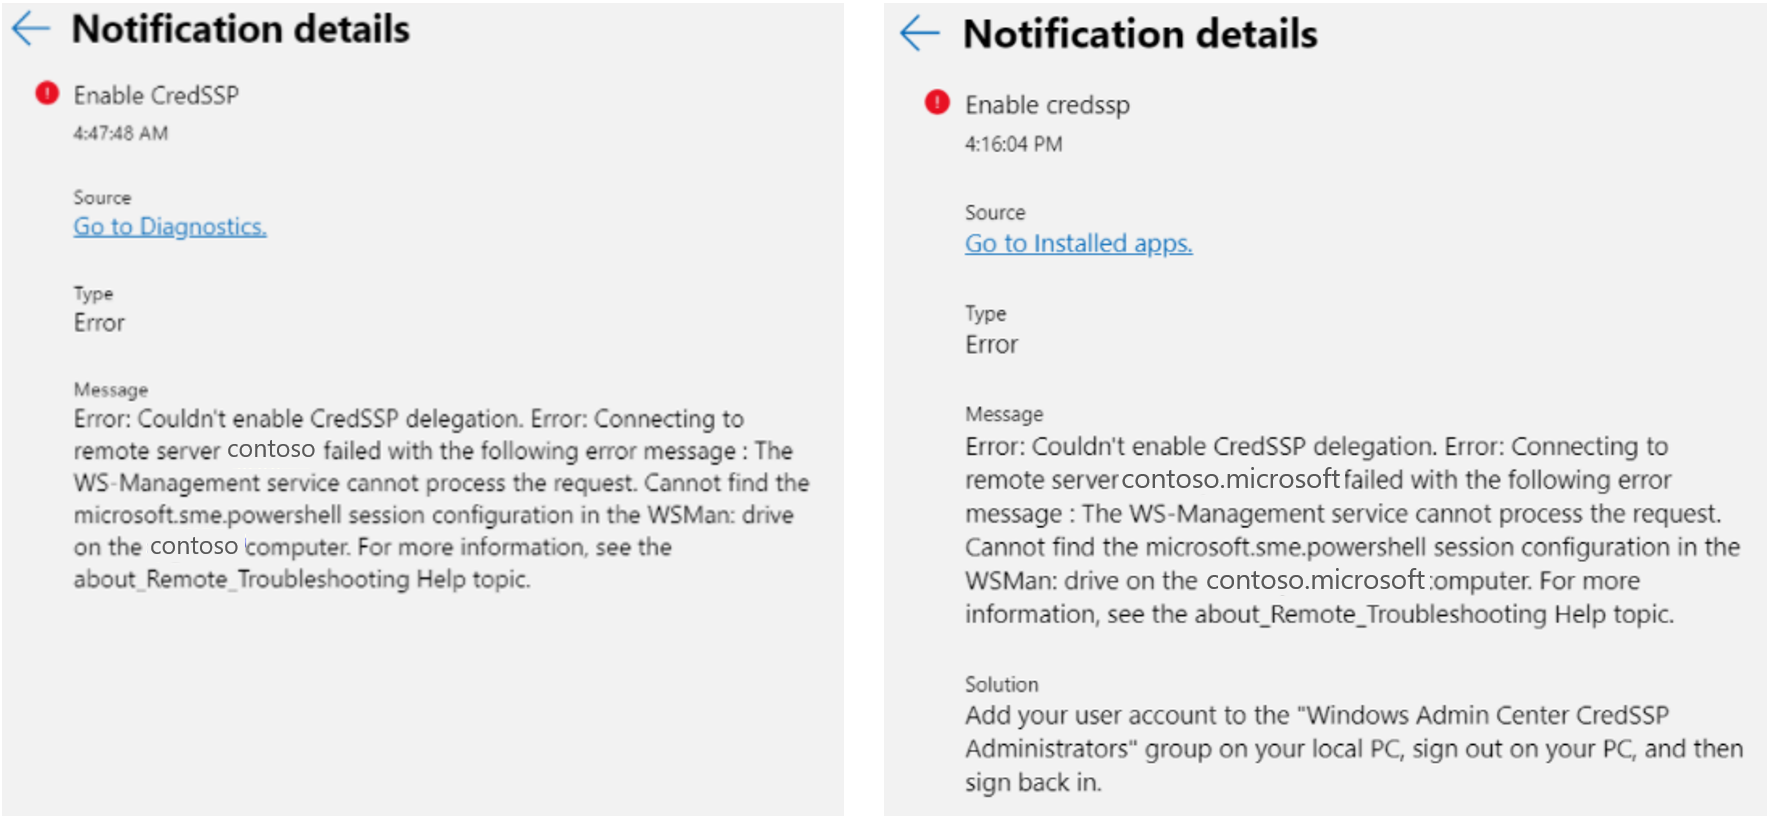 Ein direkter Vergleich der Fehlerbenachrichtigung für Endpunktberechtigungen für CRED S S P in Windows Admin Center.